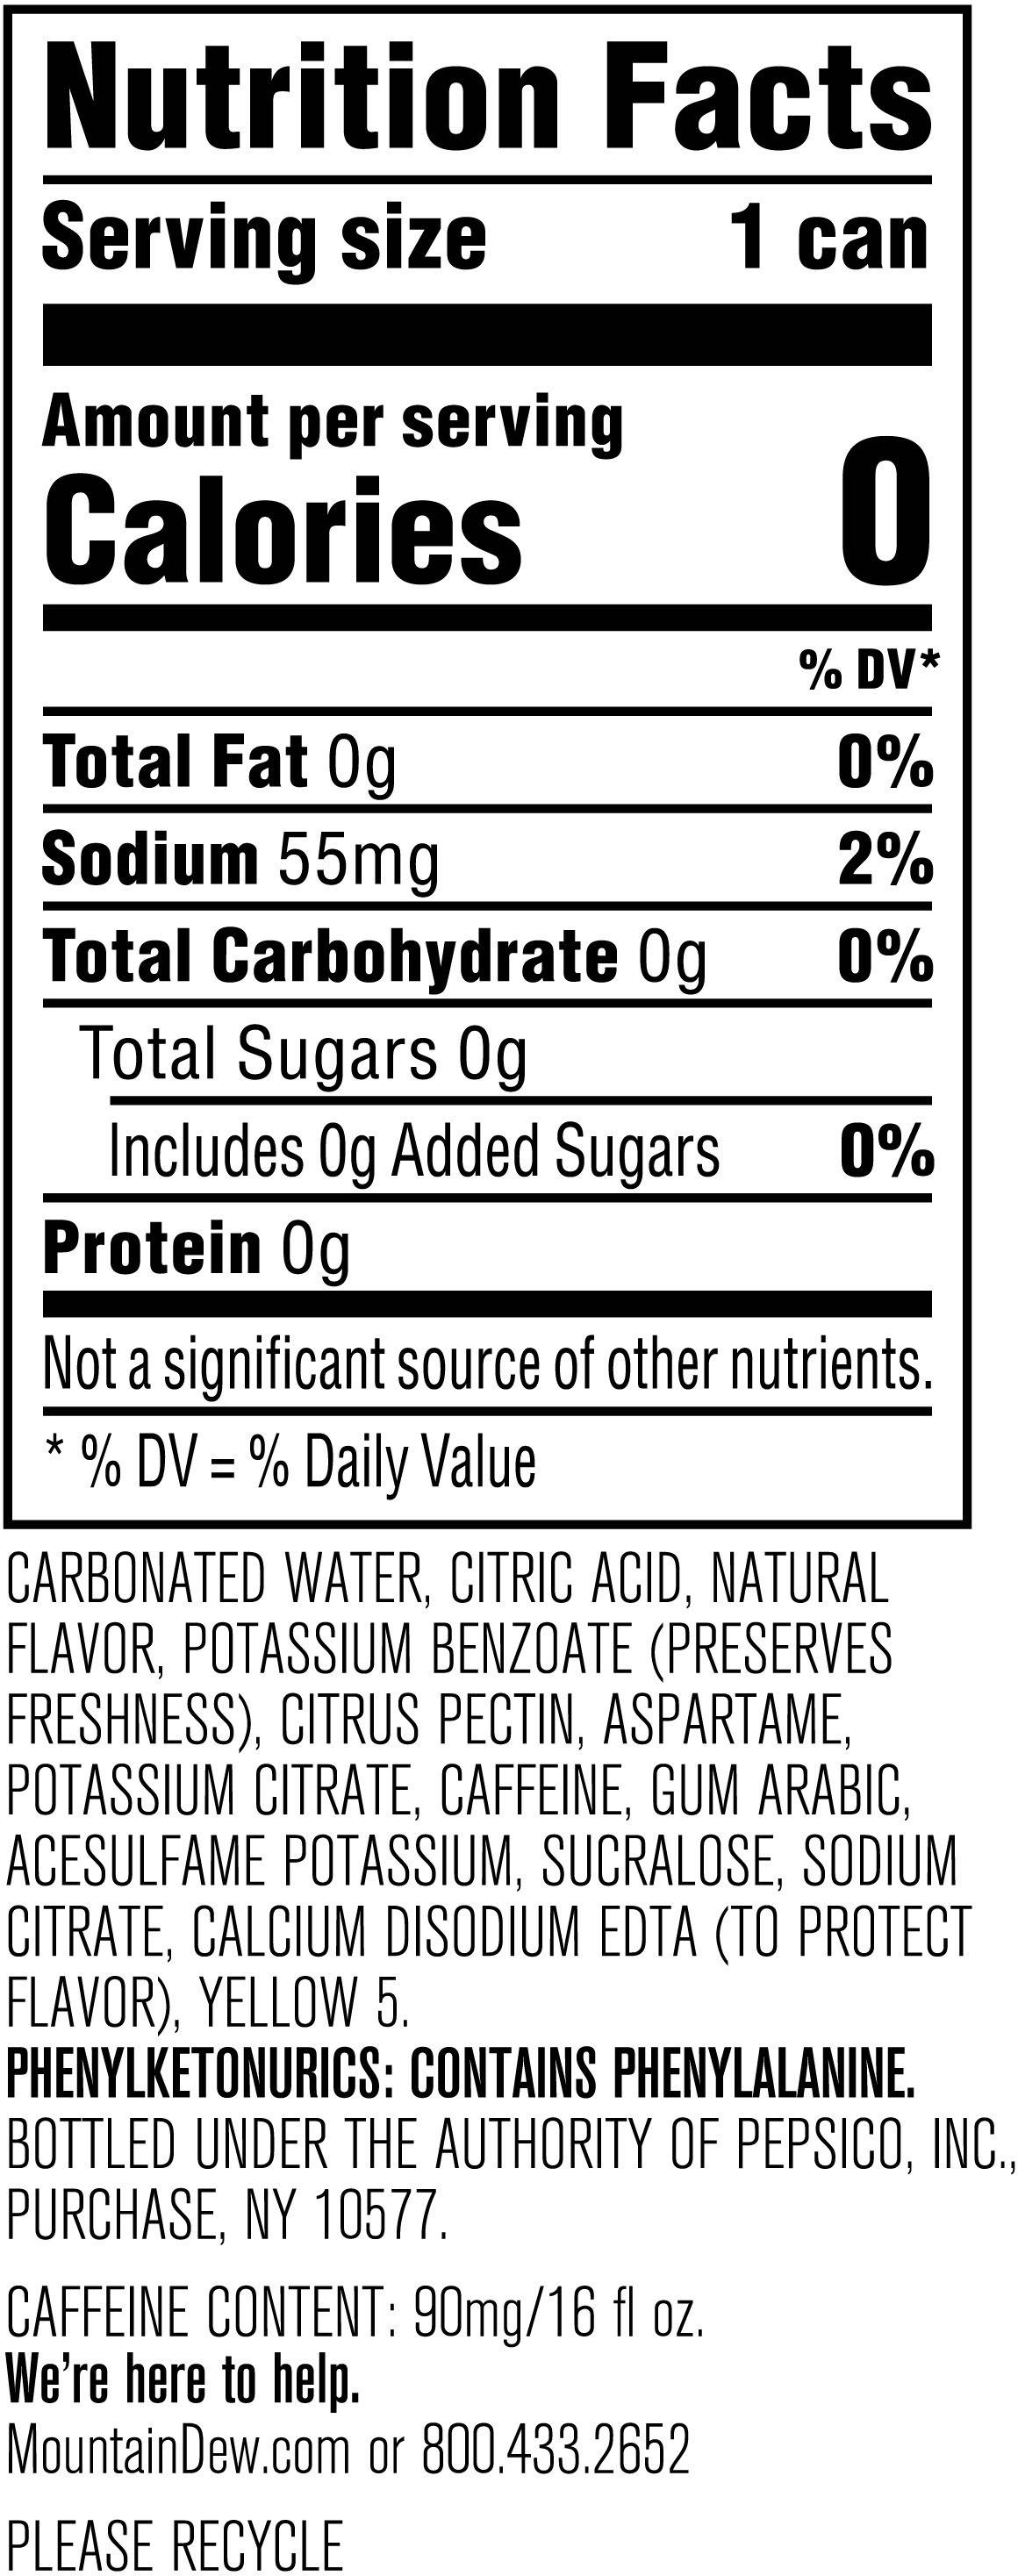 Image describing nutrition information for product Mtn Dew Zero Sugar